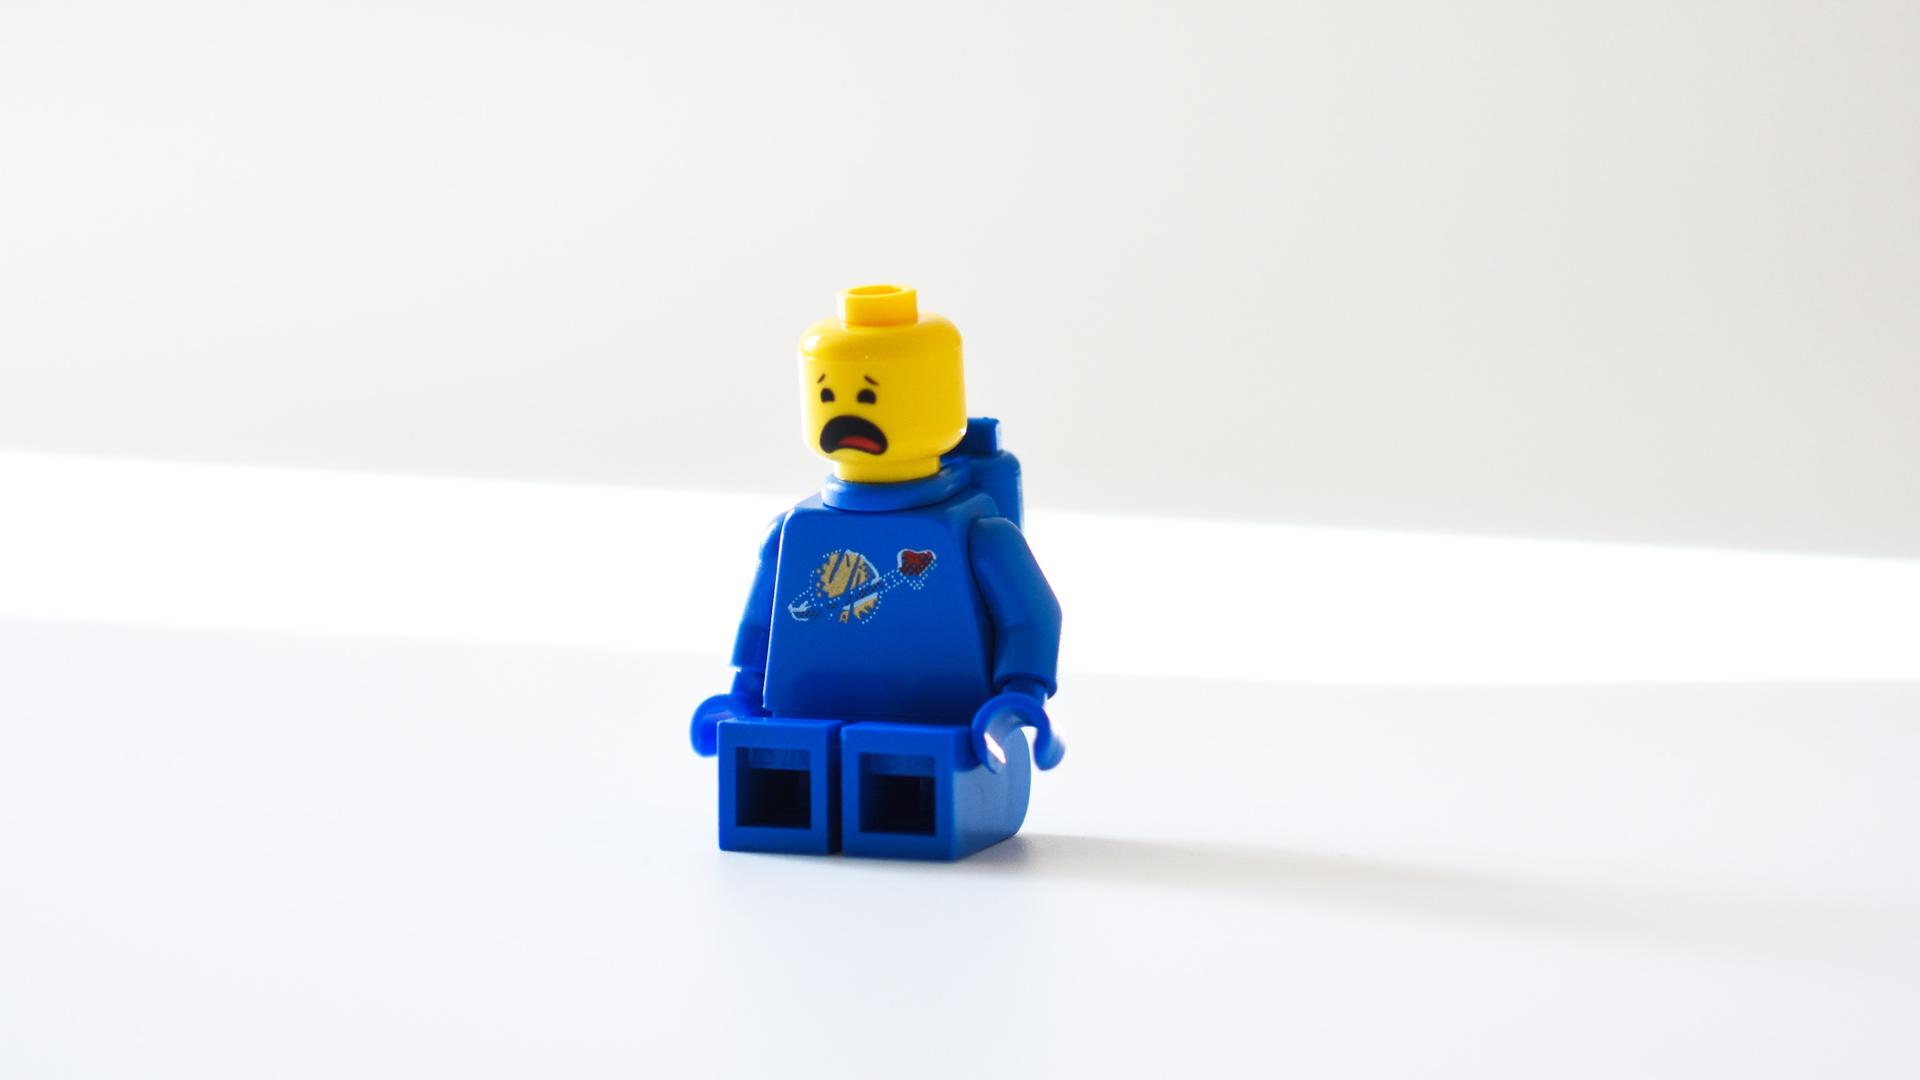 Ein Lego Männchen mit jammerndem Gesichtsausdruck.